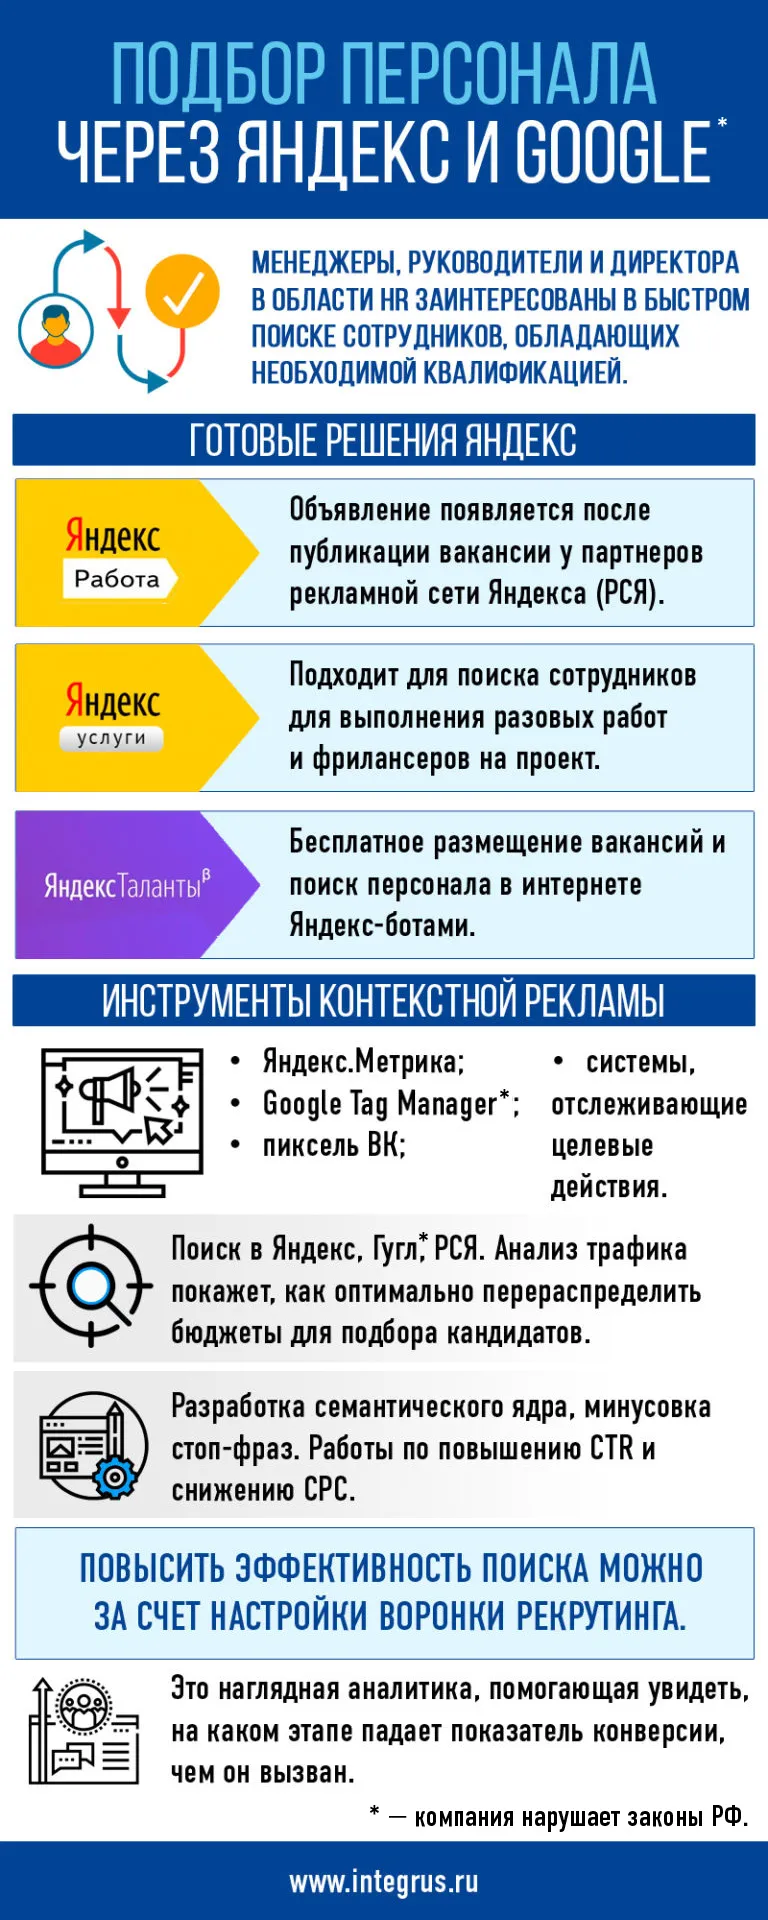 Подбор персонала через Google и Яндекс